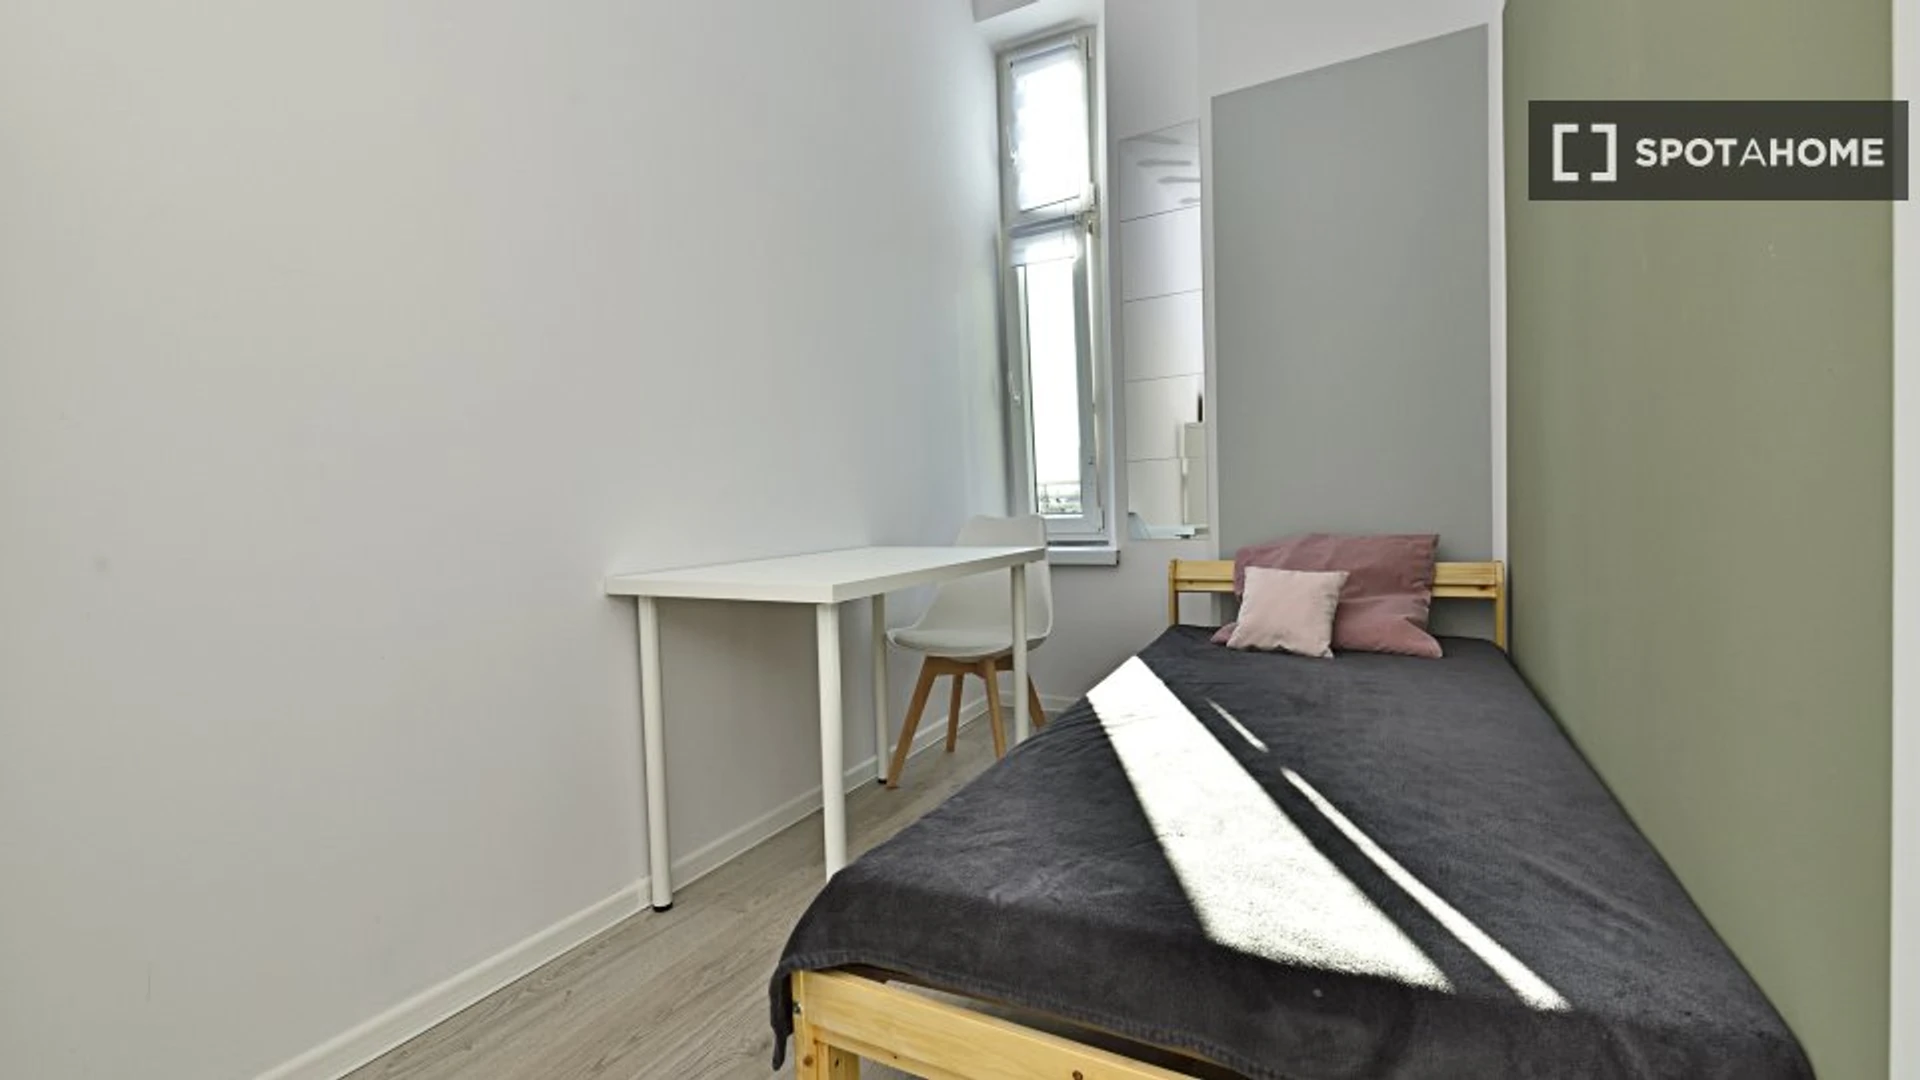 Łódź de çift kişilik yataklı kiralık oda